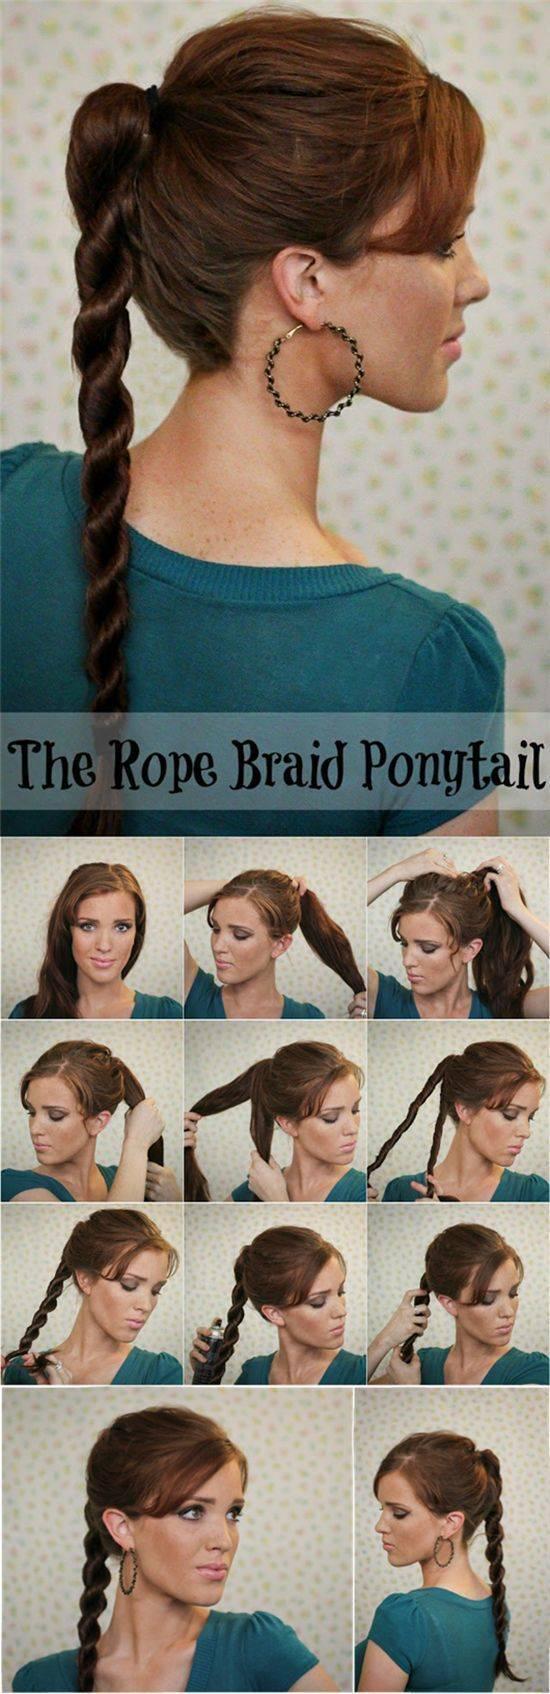 รูปภาพ:http://glamradar.com/wp-content/uploads/2014/08/rope-braid-ponytail-tutorial.jpg